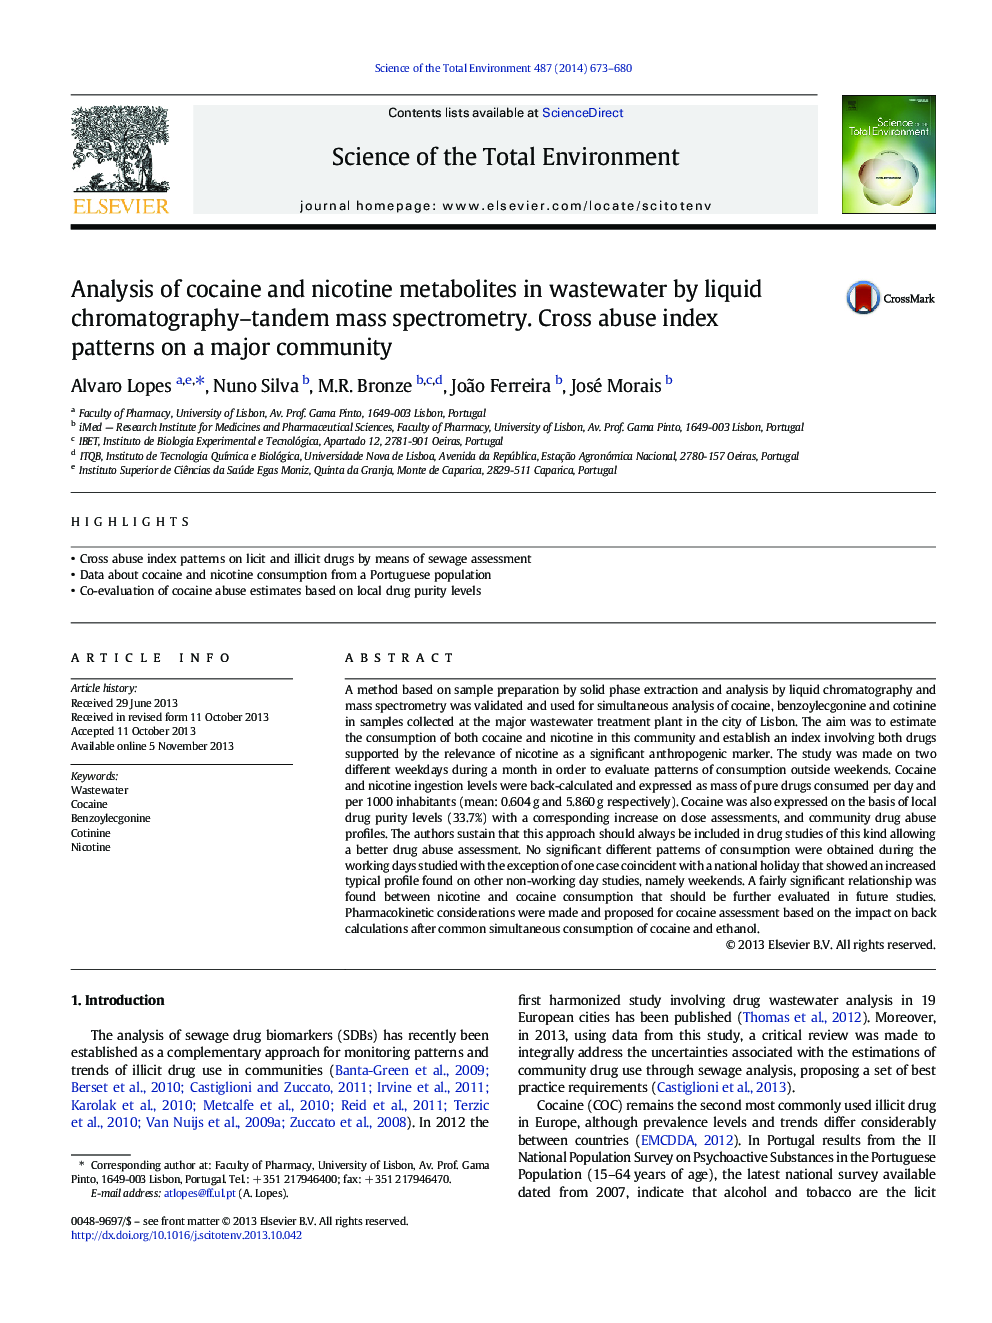 تجزیه و تحلیل متابولیت کوکائین و نیکوتین در فاضلاب با استفاده از اسپکترومتری جرمی کروماتوگرافی-دوطرفه. الگوهای سوء استفاده از سوء استفاده در یک جامعه عمده 